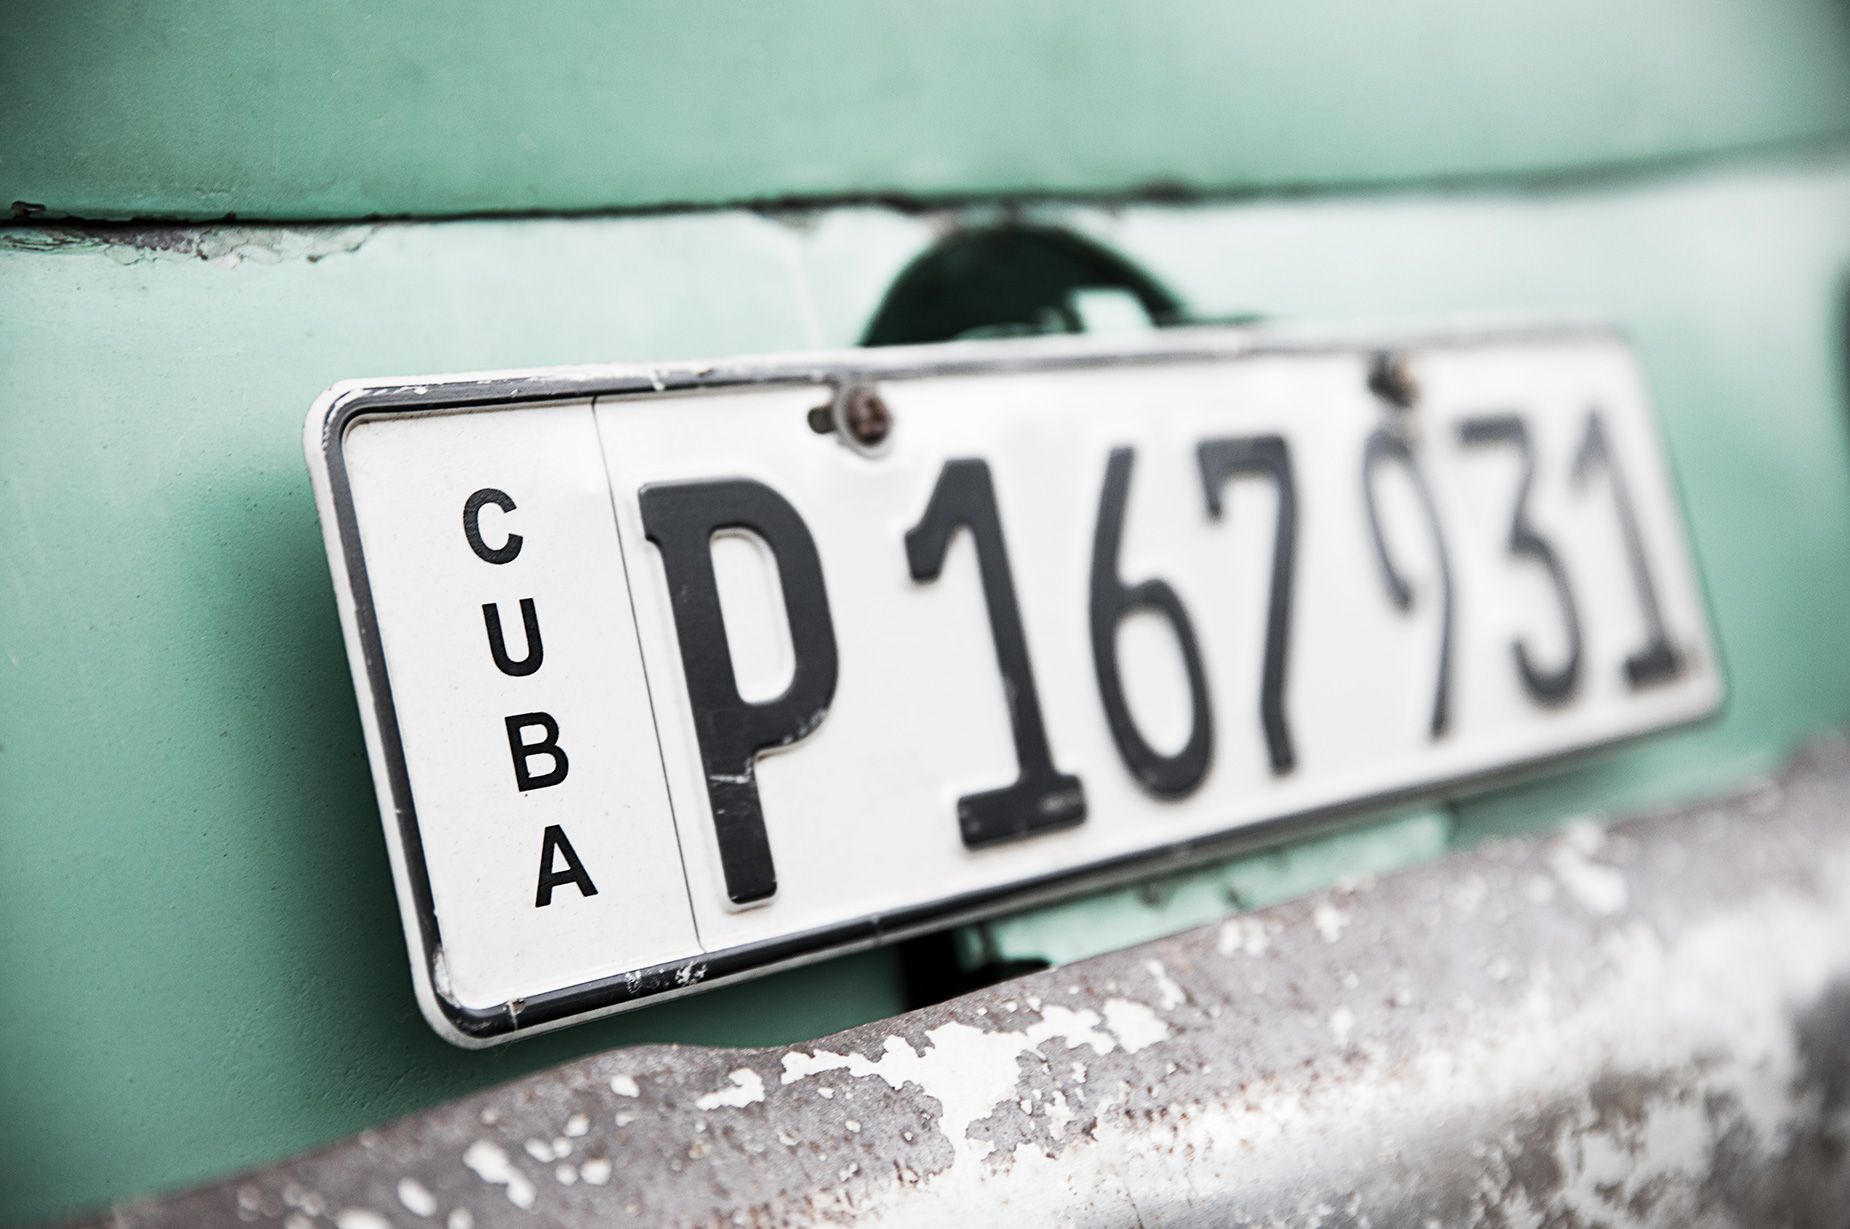 Cuba_468.jpg